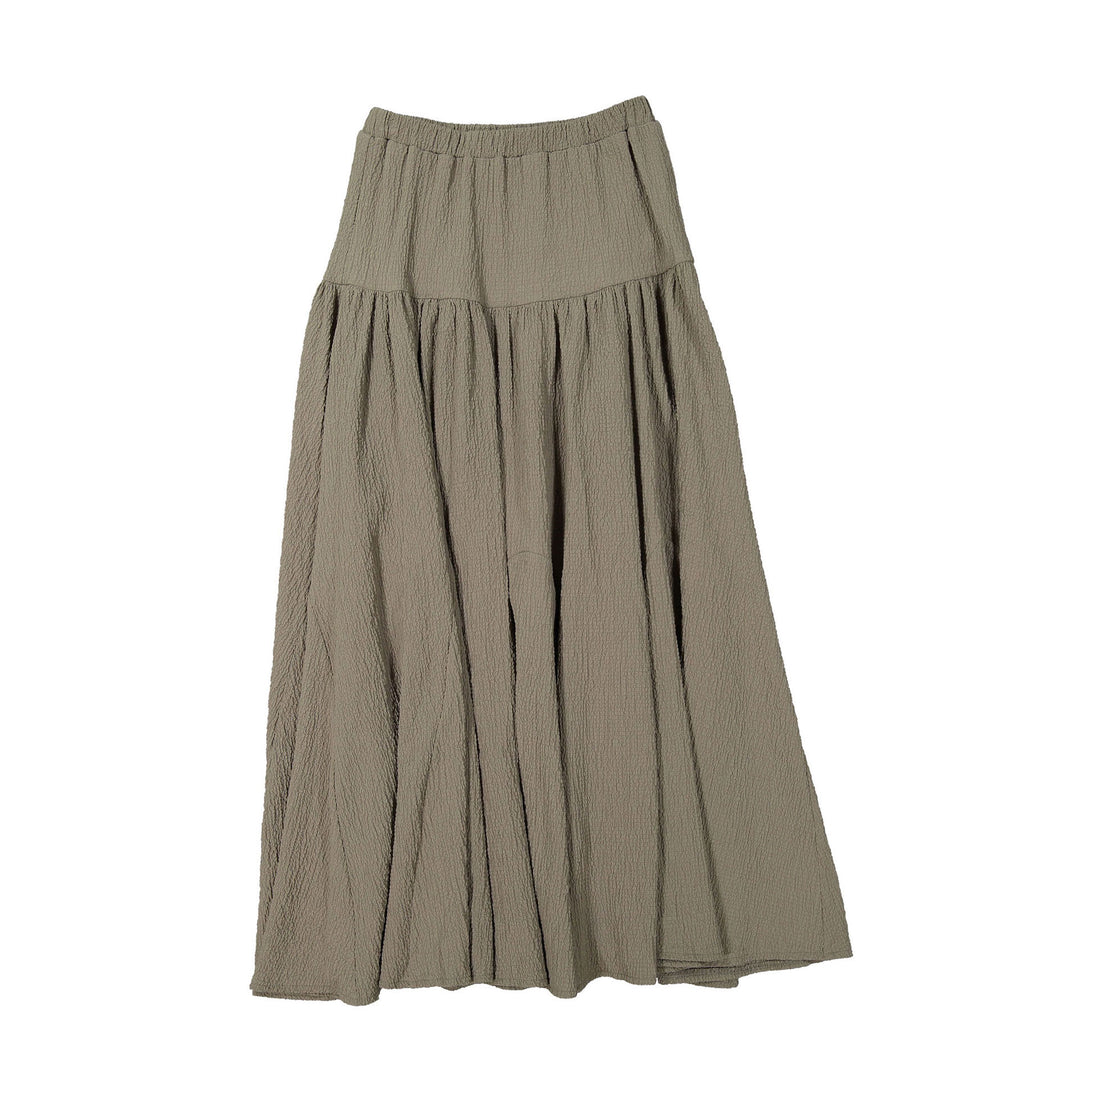 A4 Taupe Dropwaist Maxi Skirt